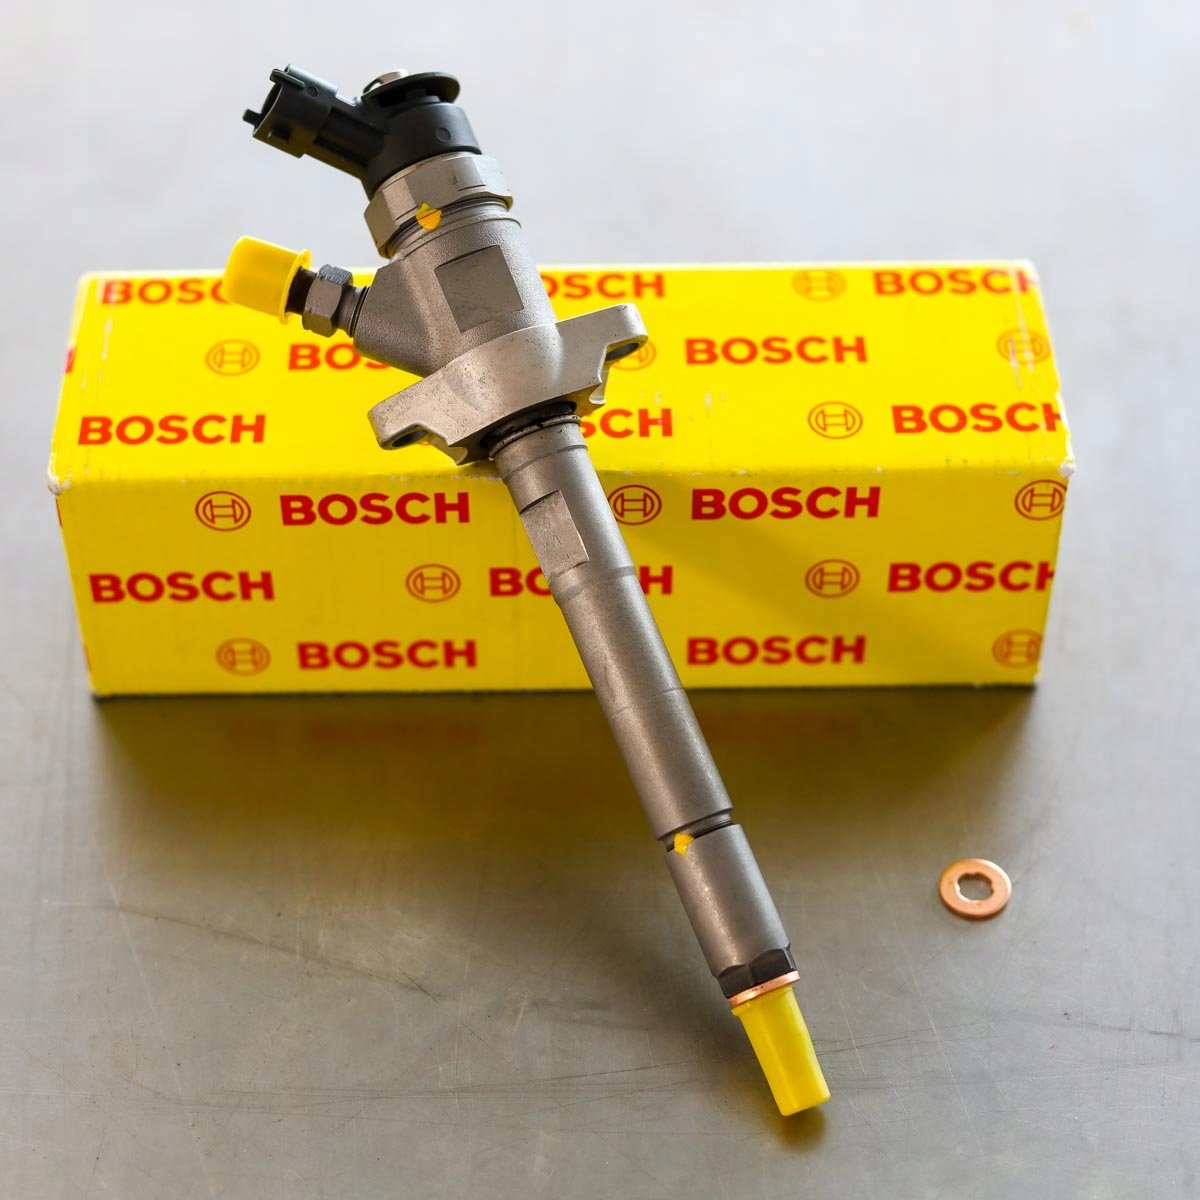 Wtryskiwacz Bosch po naprawie gotowy do nadania do zamawiającego na gwarancji na okres 24 miesięcy w świetnej cenie